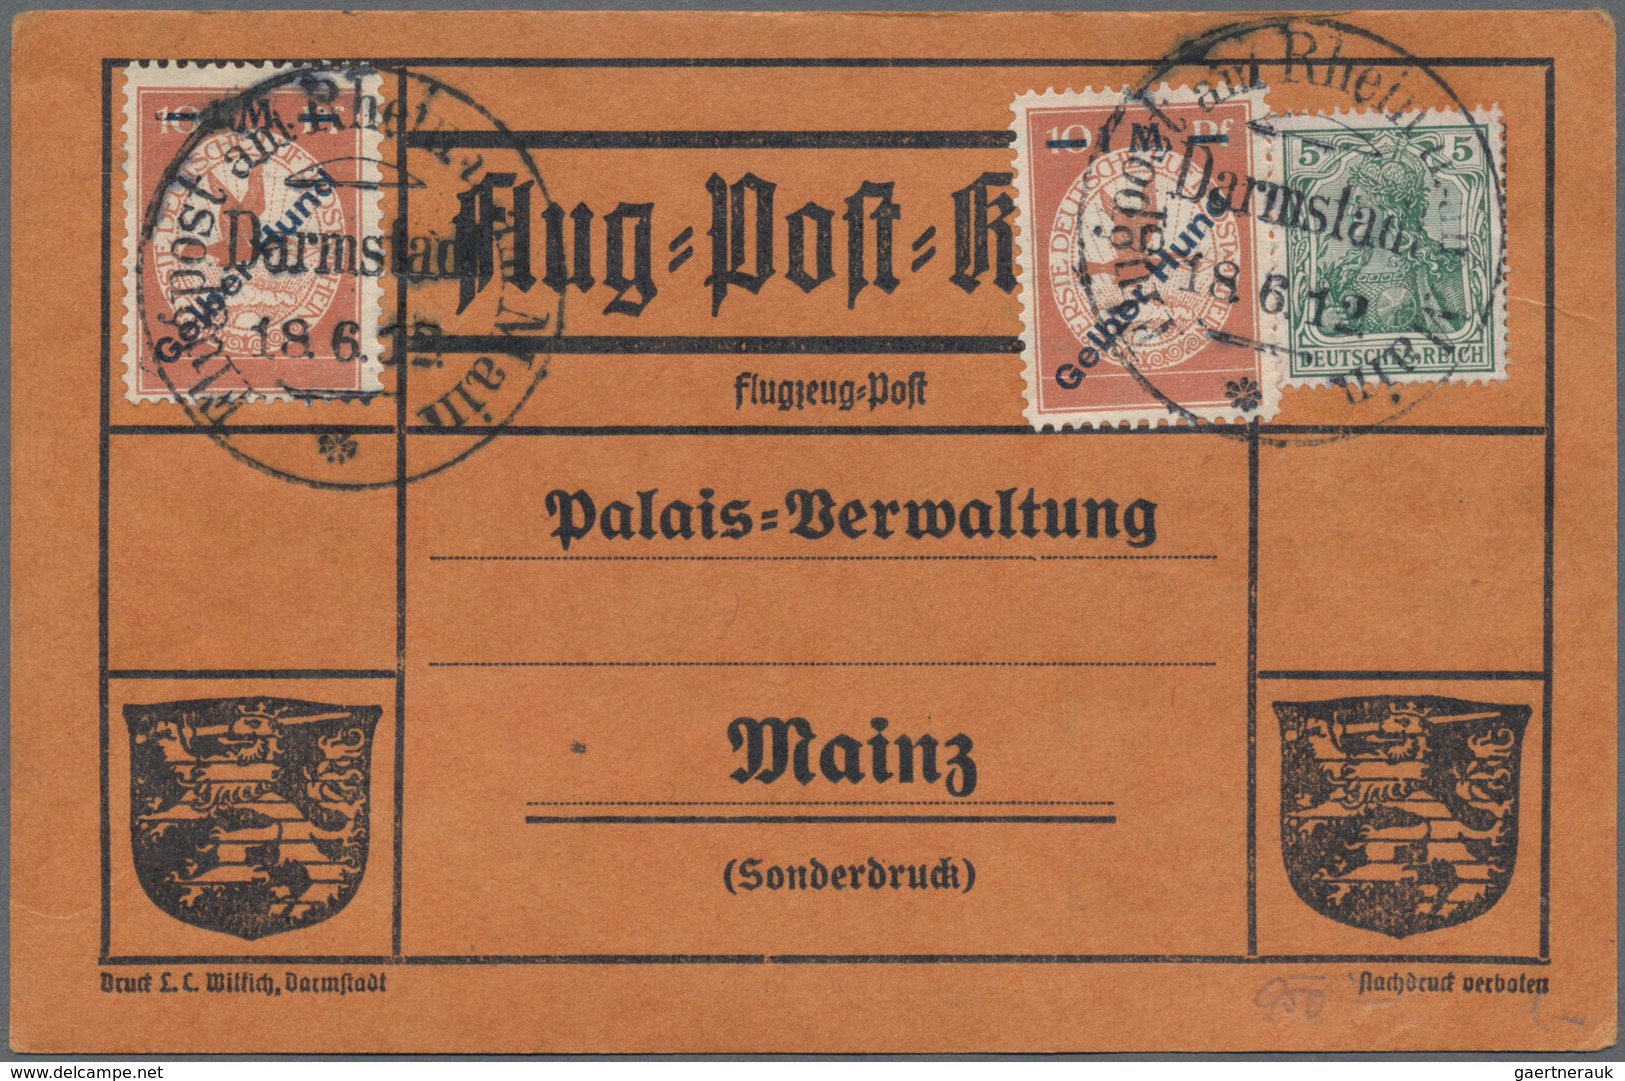 Flugpost Europa: 1919-1955, toller Posten mit über 150 Briefen, Karten und Belegen, Schwerpunkt Zepp